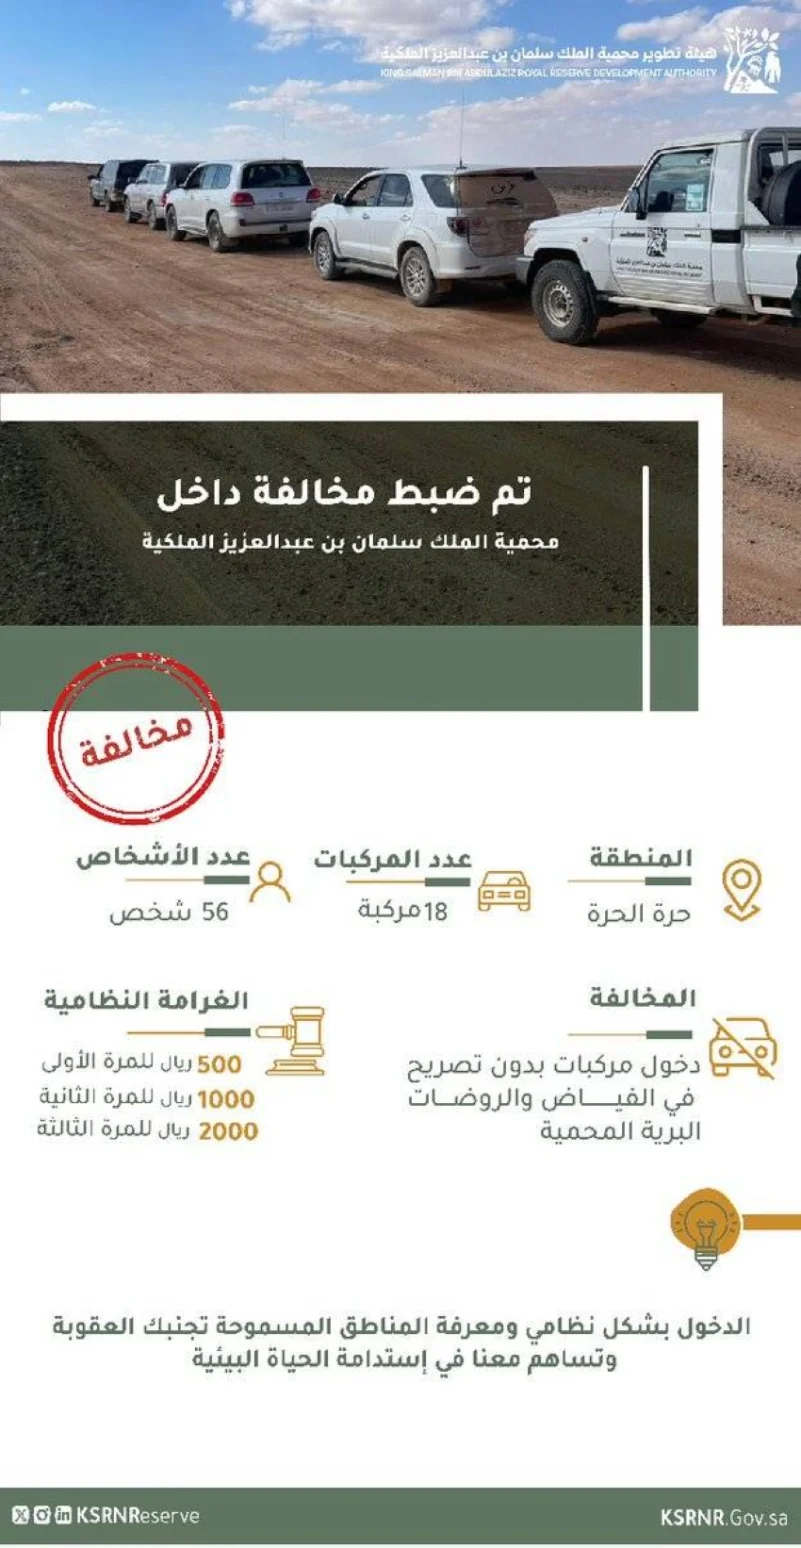 محمية الملك سلمان بن عبدالعزيز الملكية تضبطُ 18 مركبة و 56 شخصاً مخالفاً